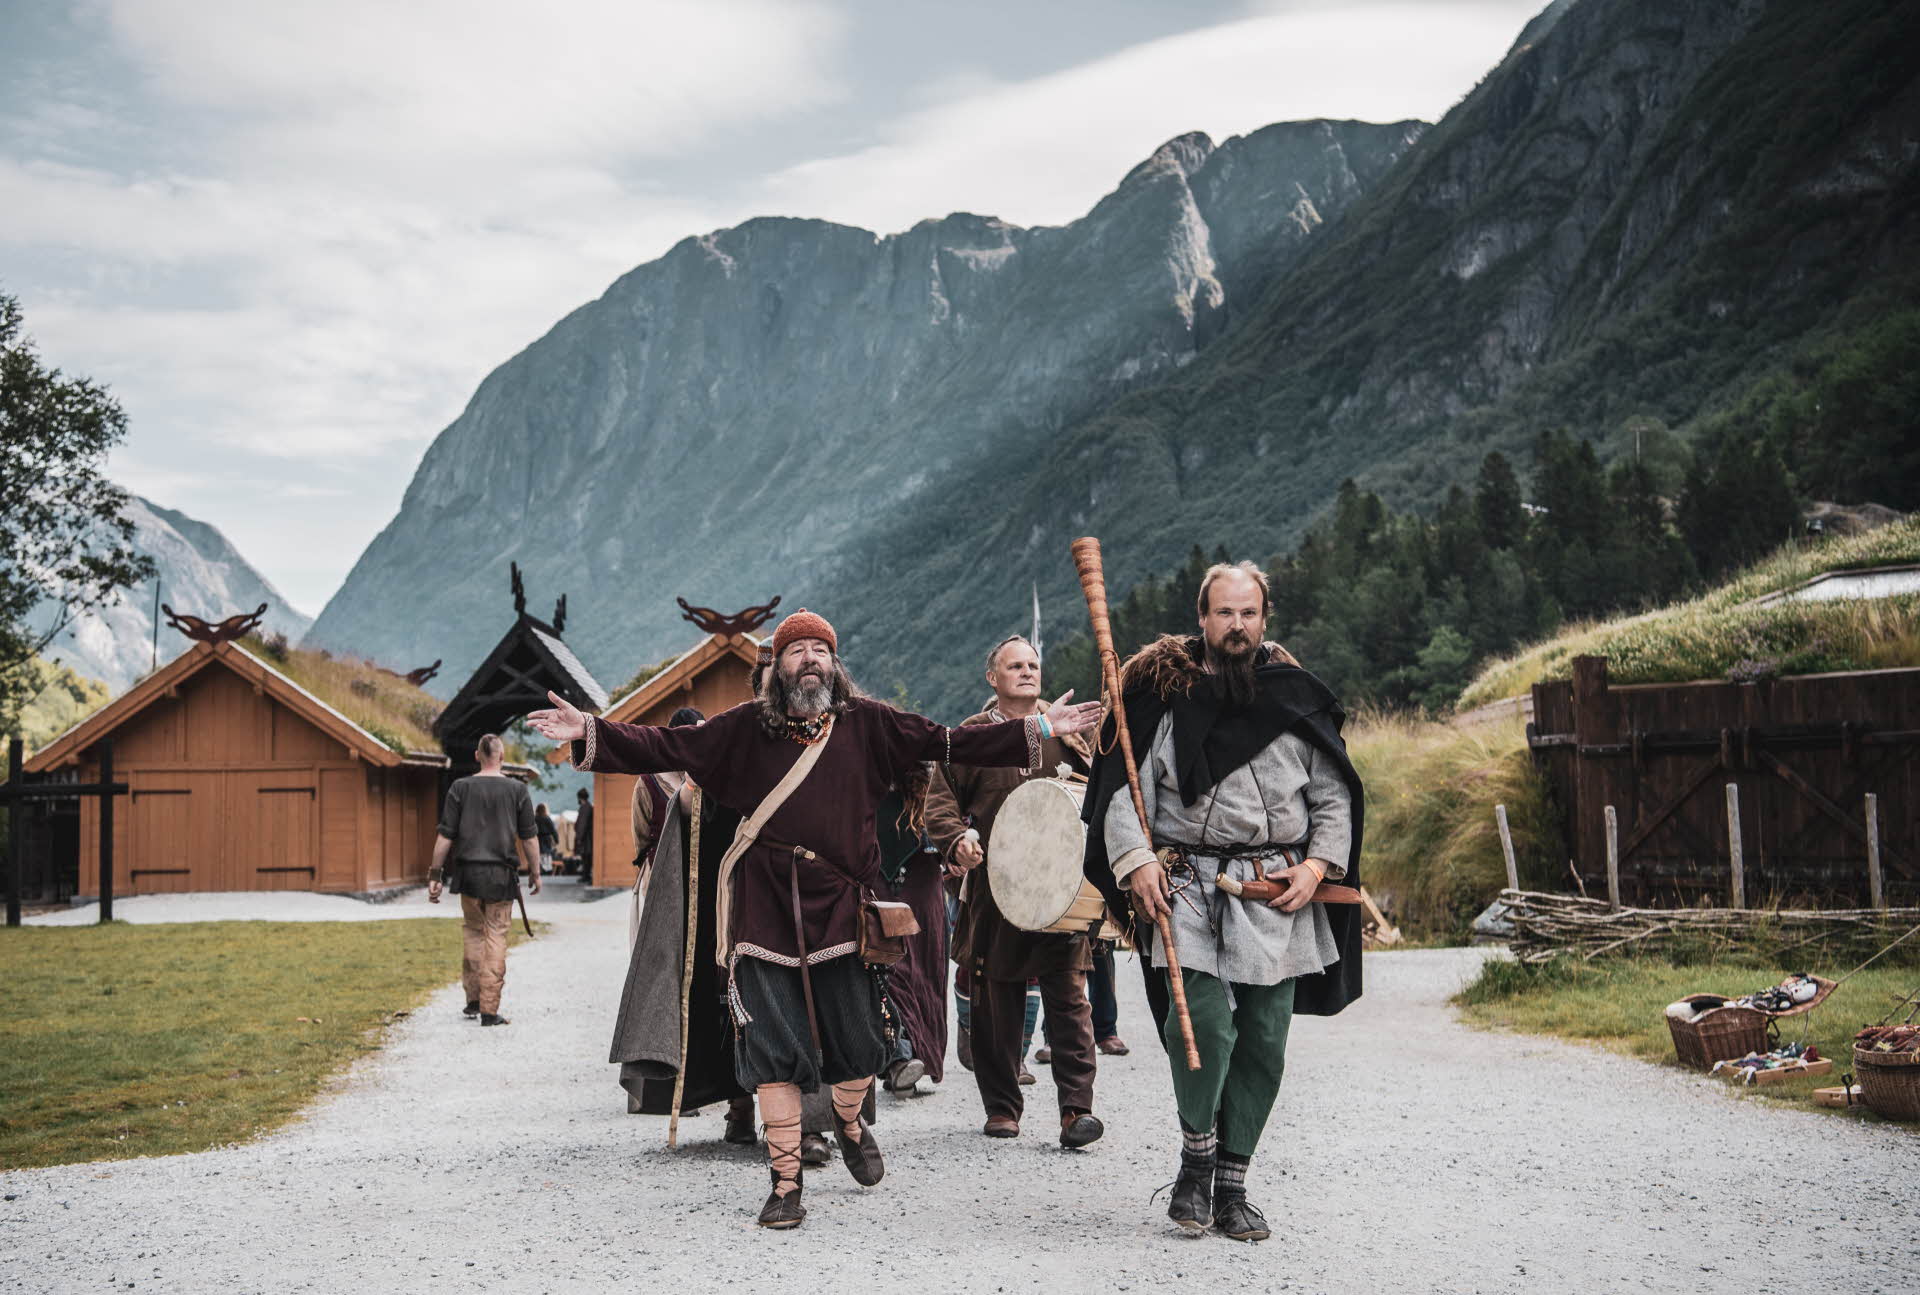 Eine Gruppe männlicher Wikinger läuft mit Instrumenten und anderen Accessoires ins Wikingerdorf hinein. Im Hintergrund sind hohe Berge zu sehen.